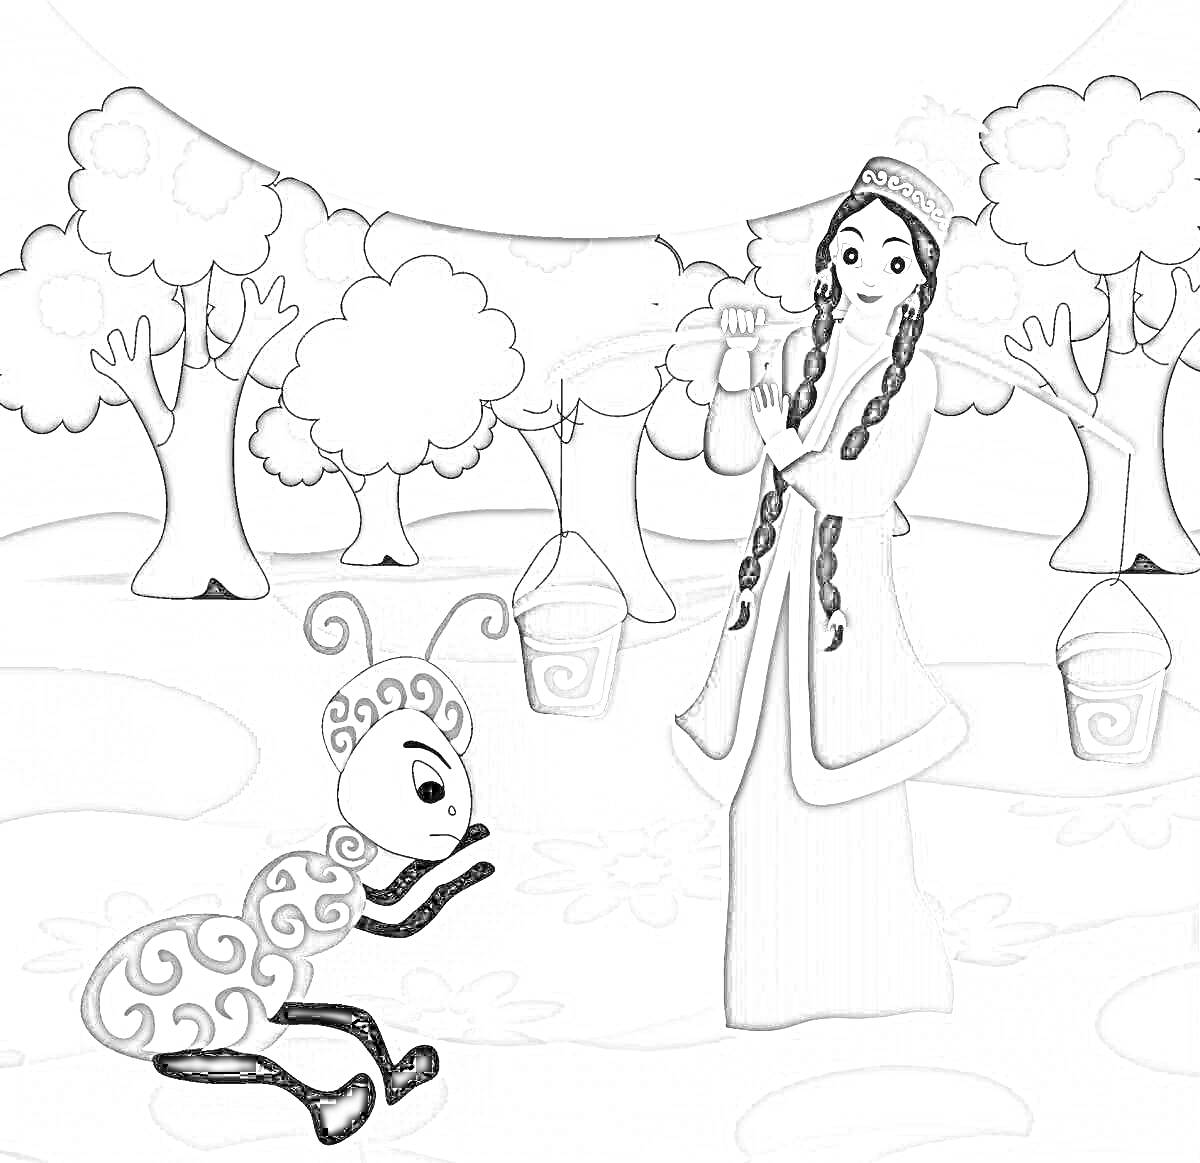 Раскраска Принцесса с ведрами и сказочное существо на коленях в лесу